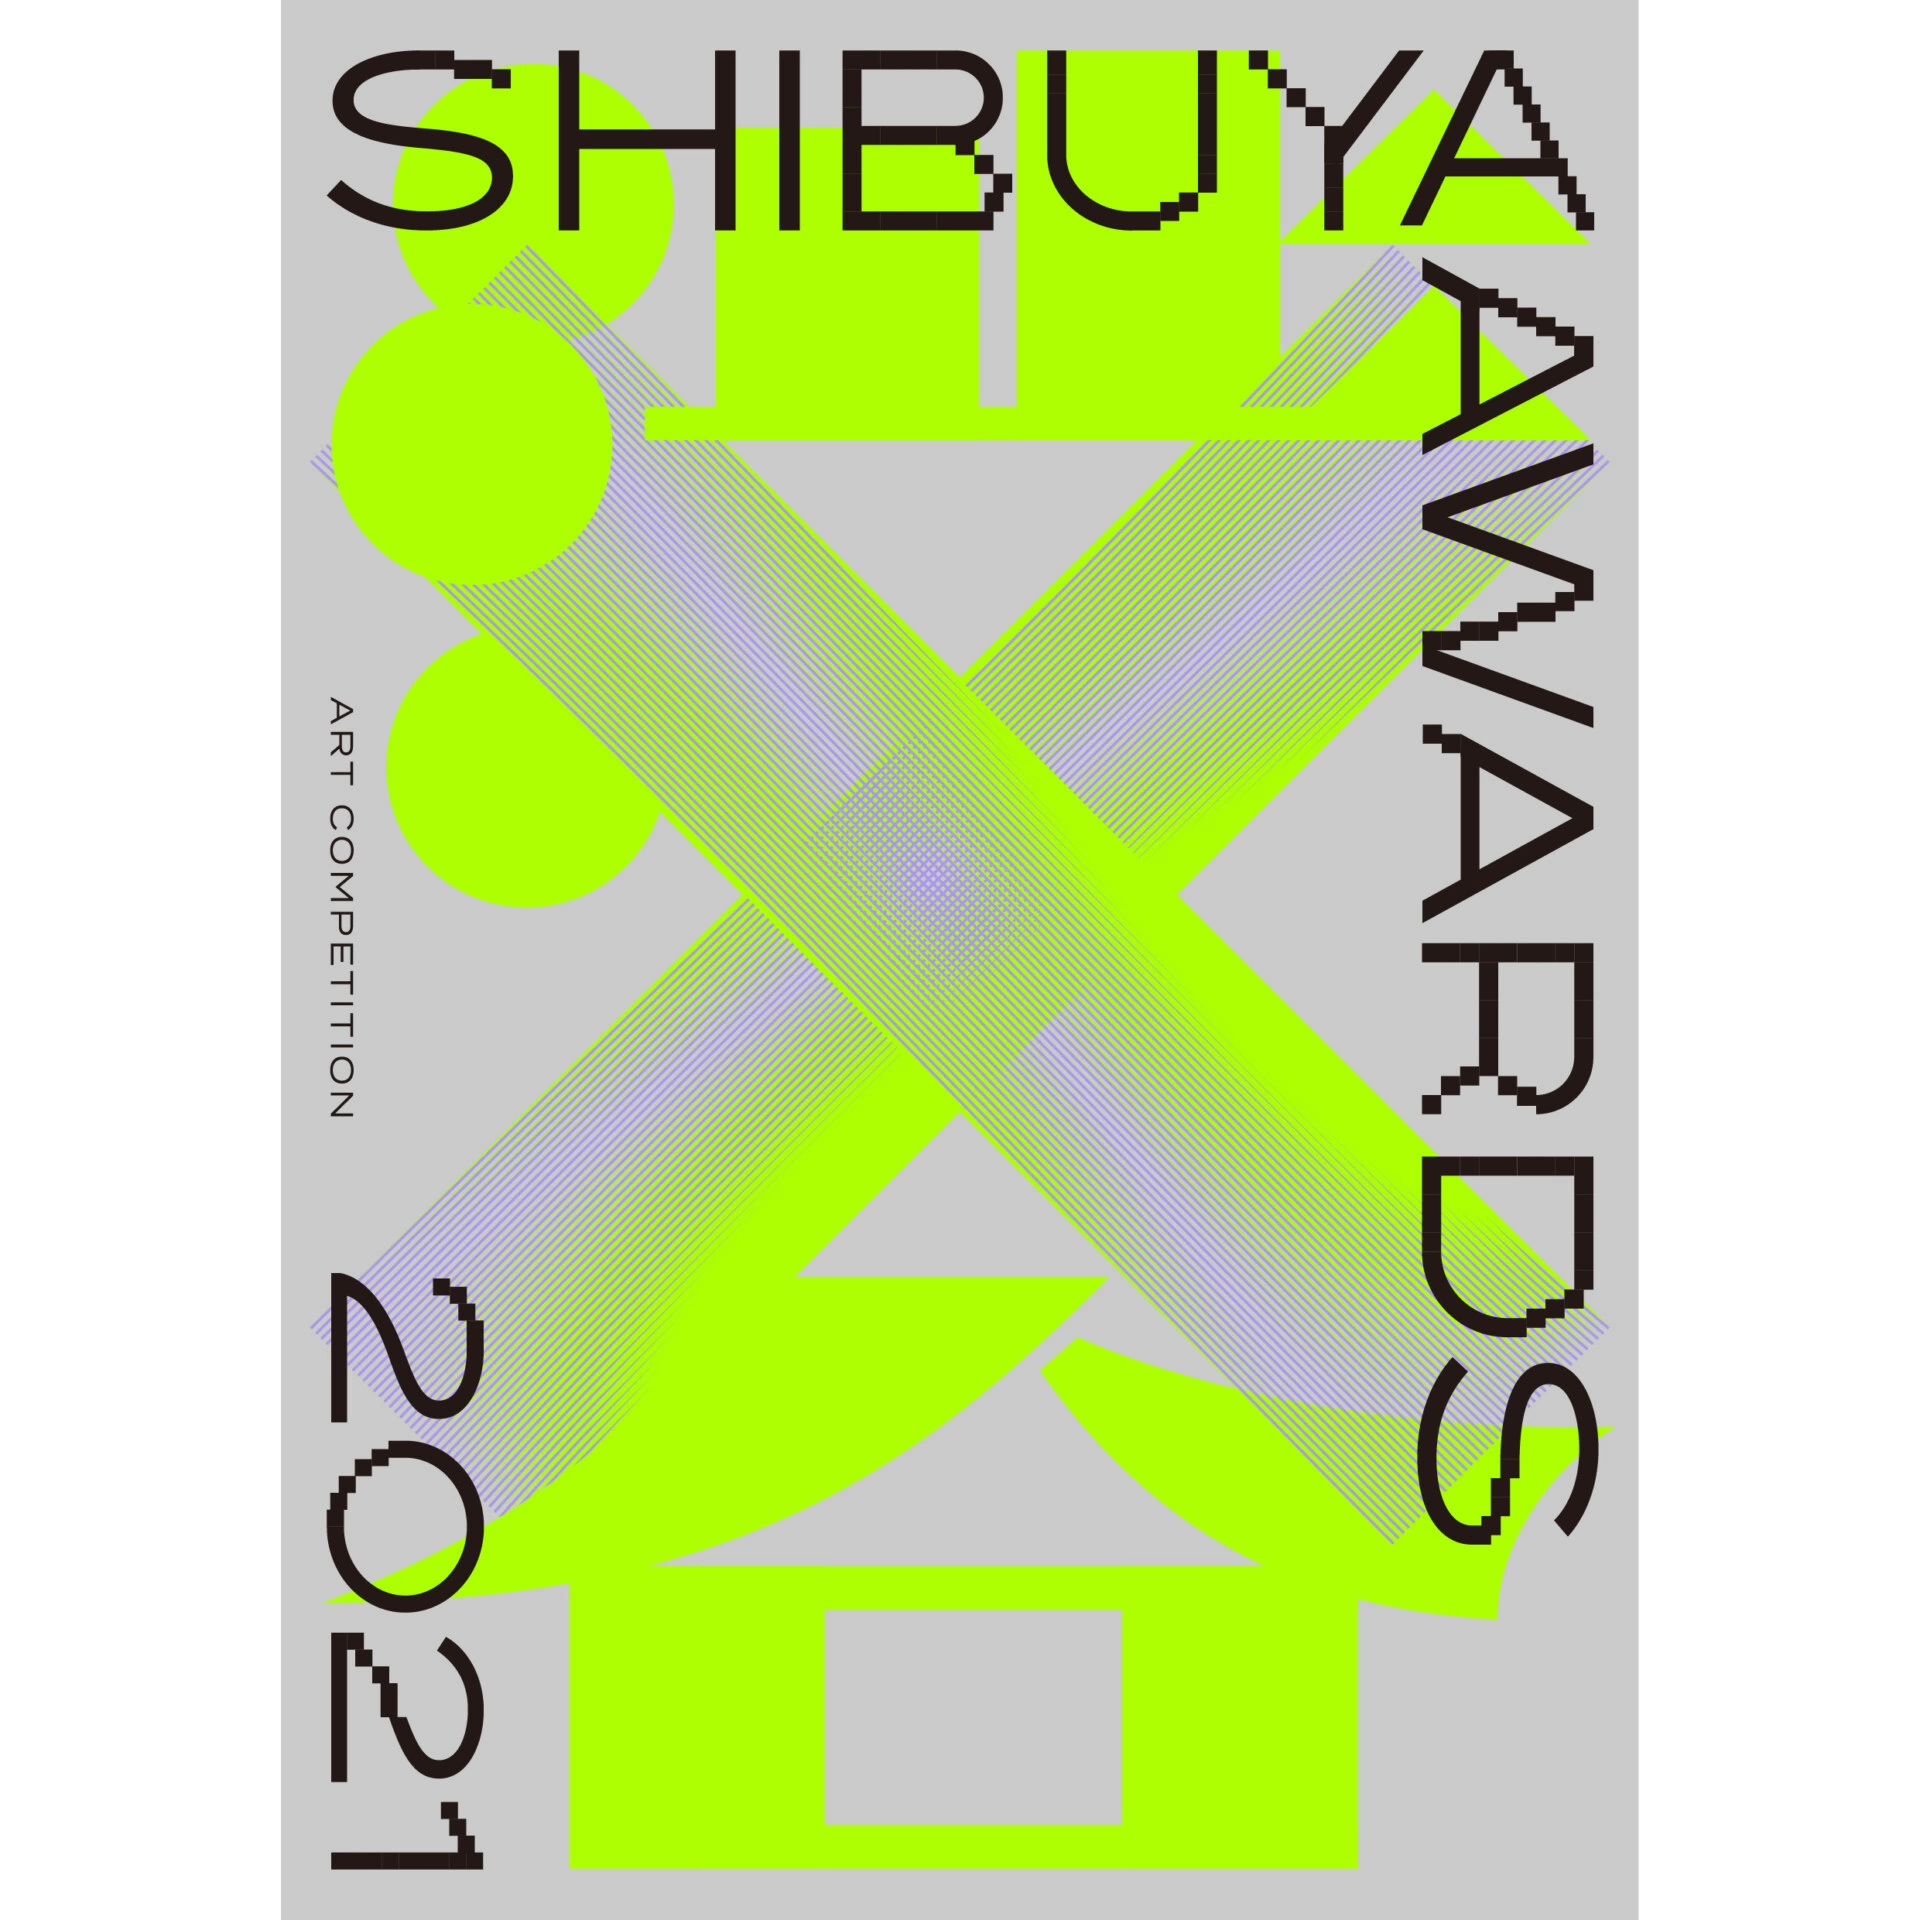 SHIBUYA AWARDS 2021